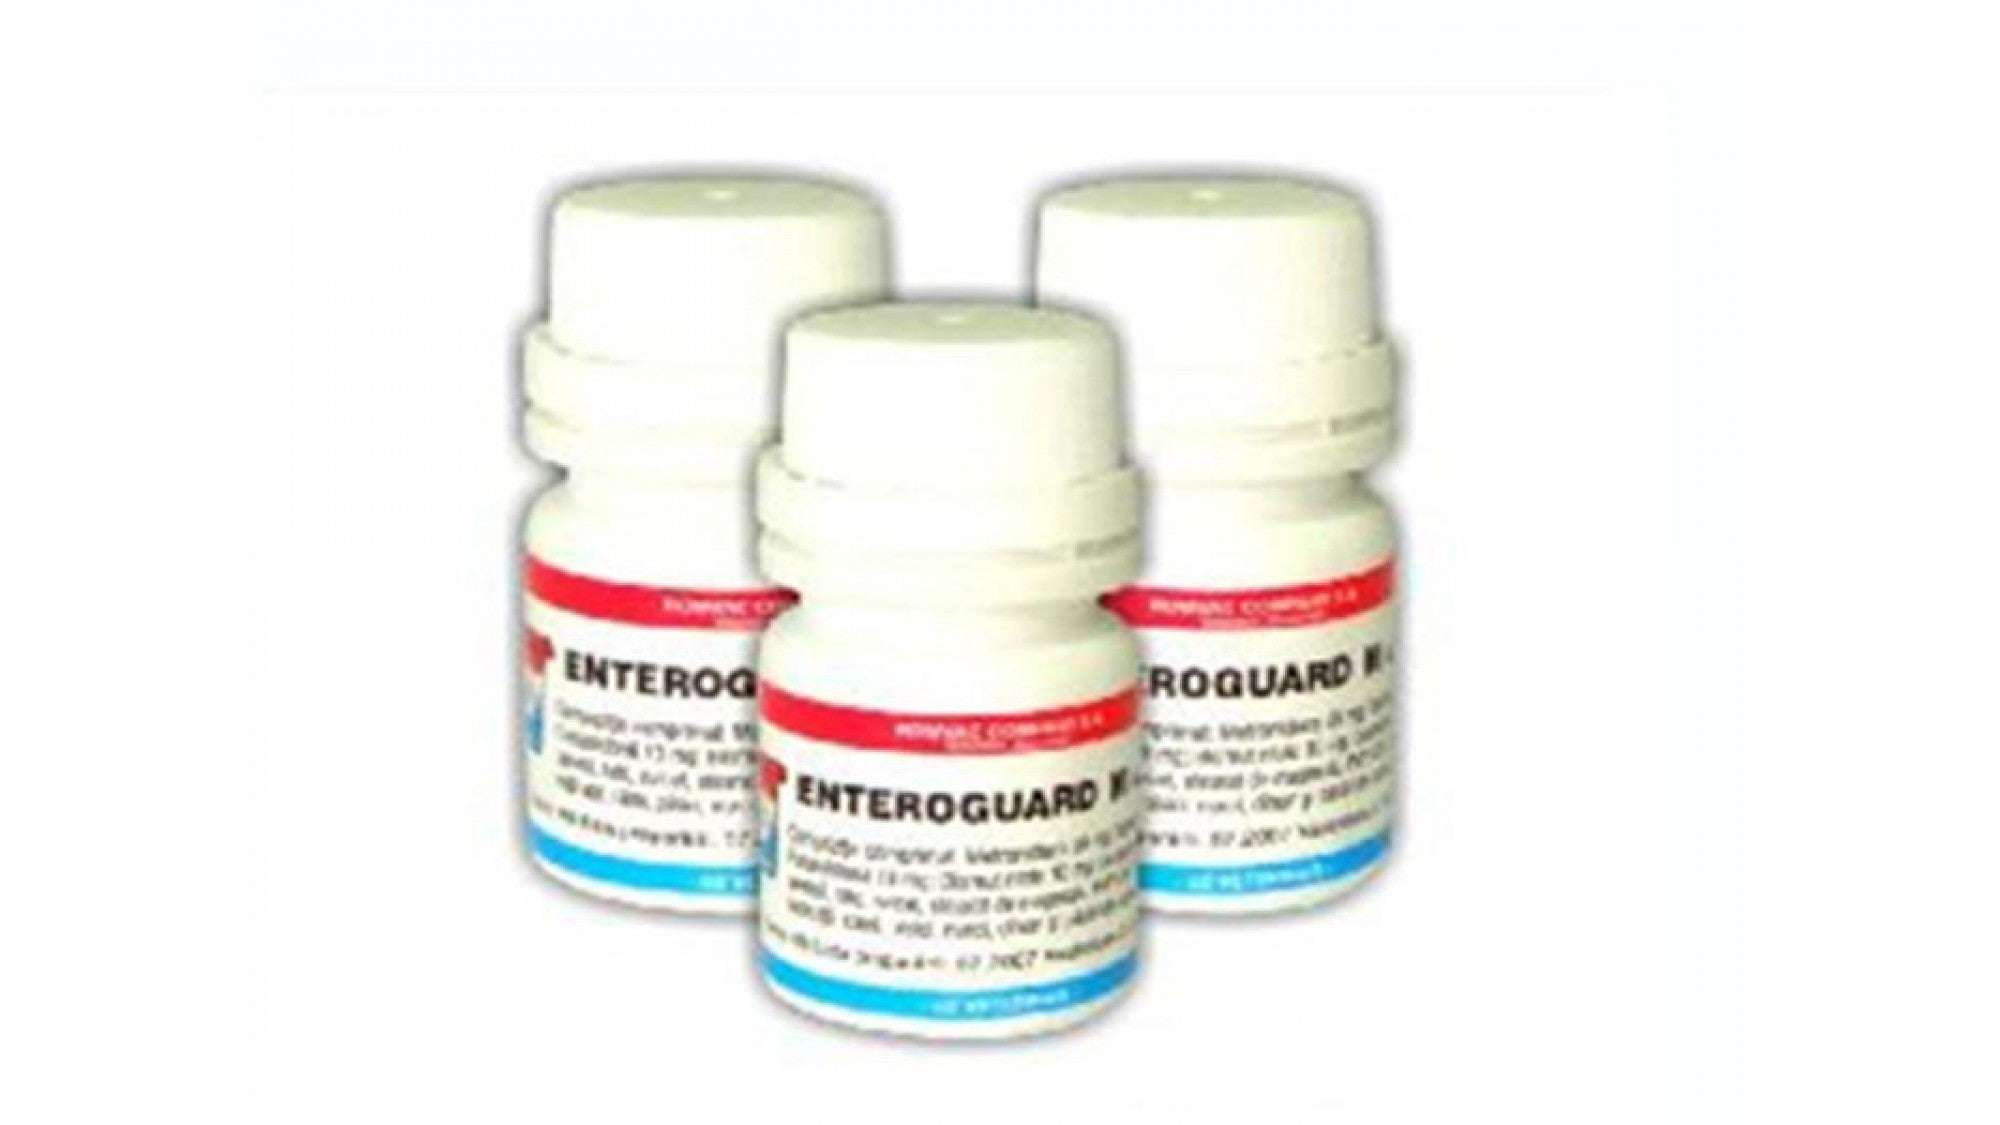 Enteroguard M 40 comprimate - ALTVET - Farmacie veterinara - Pet Shop - Cosmetica